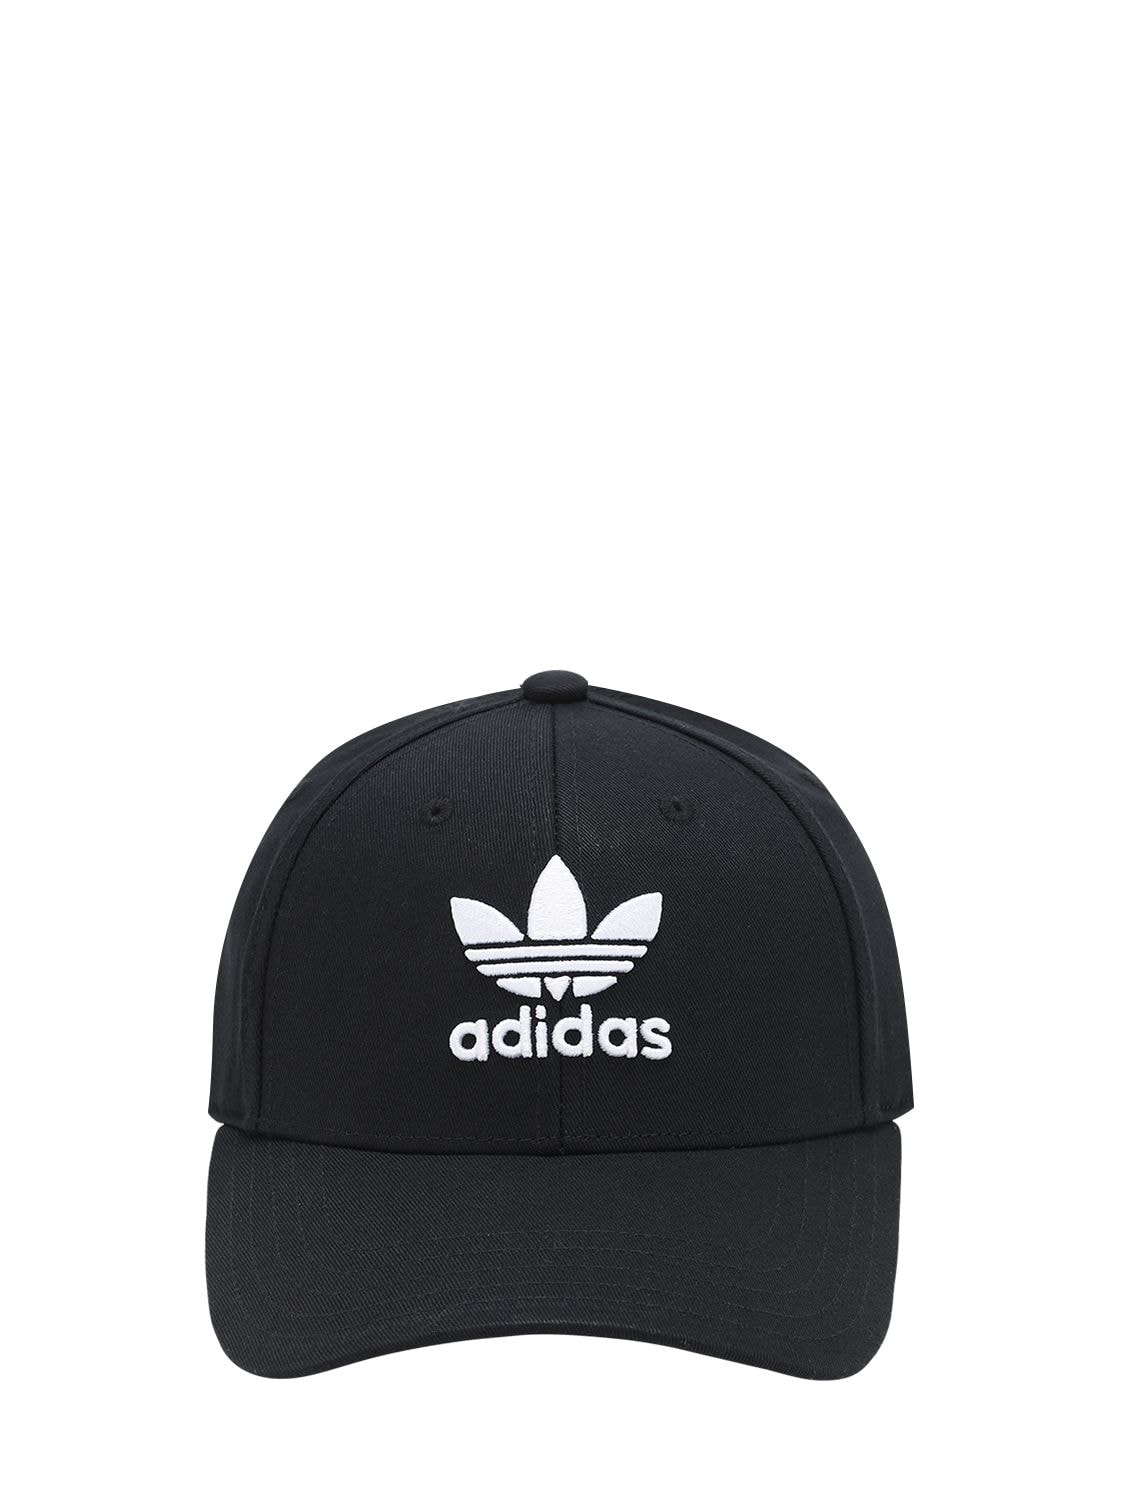 Adidas Originals Classic Trefoil Cotton Baseball Hat In Black